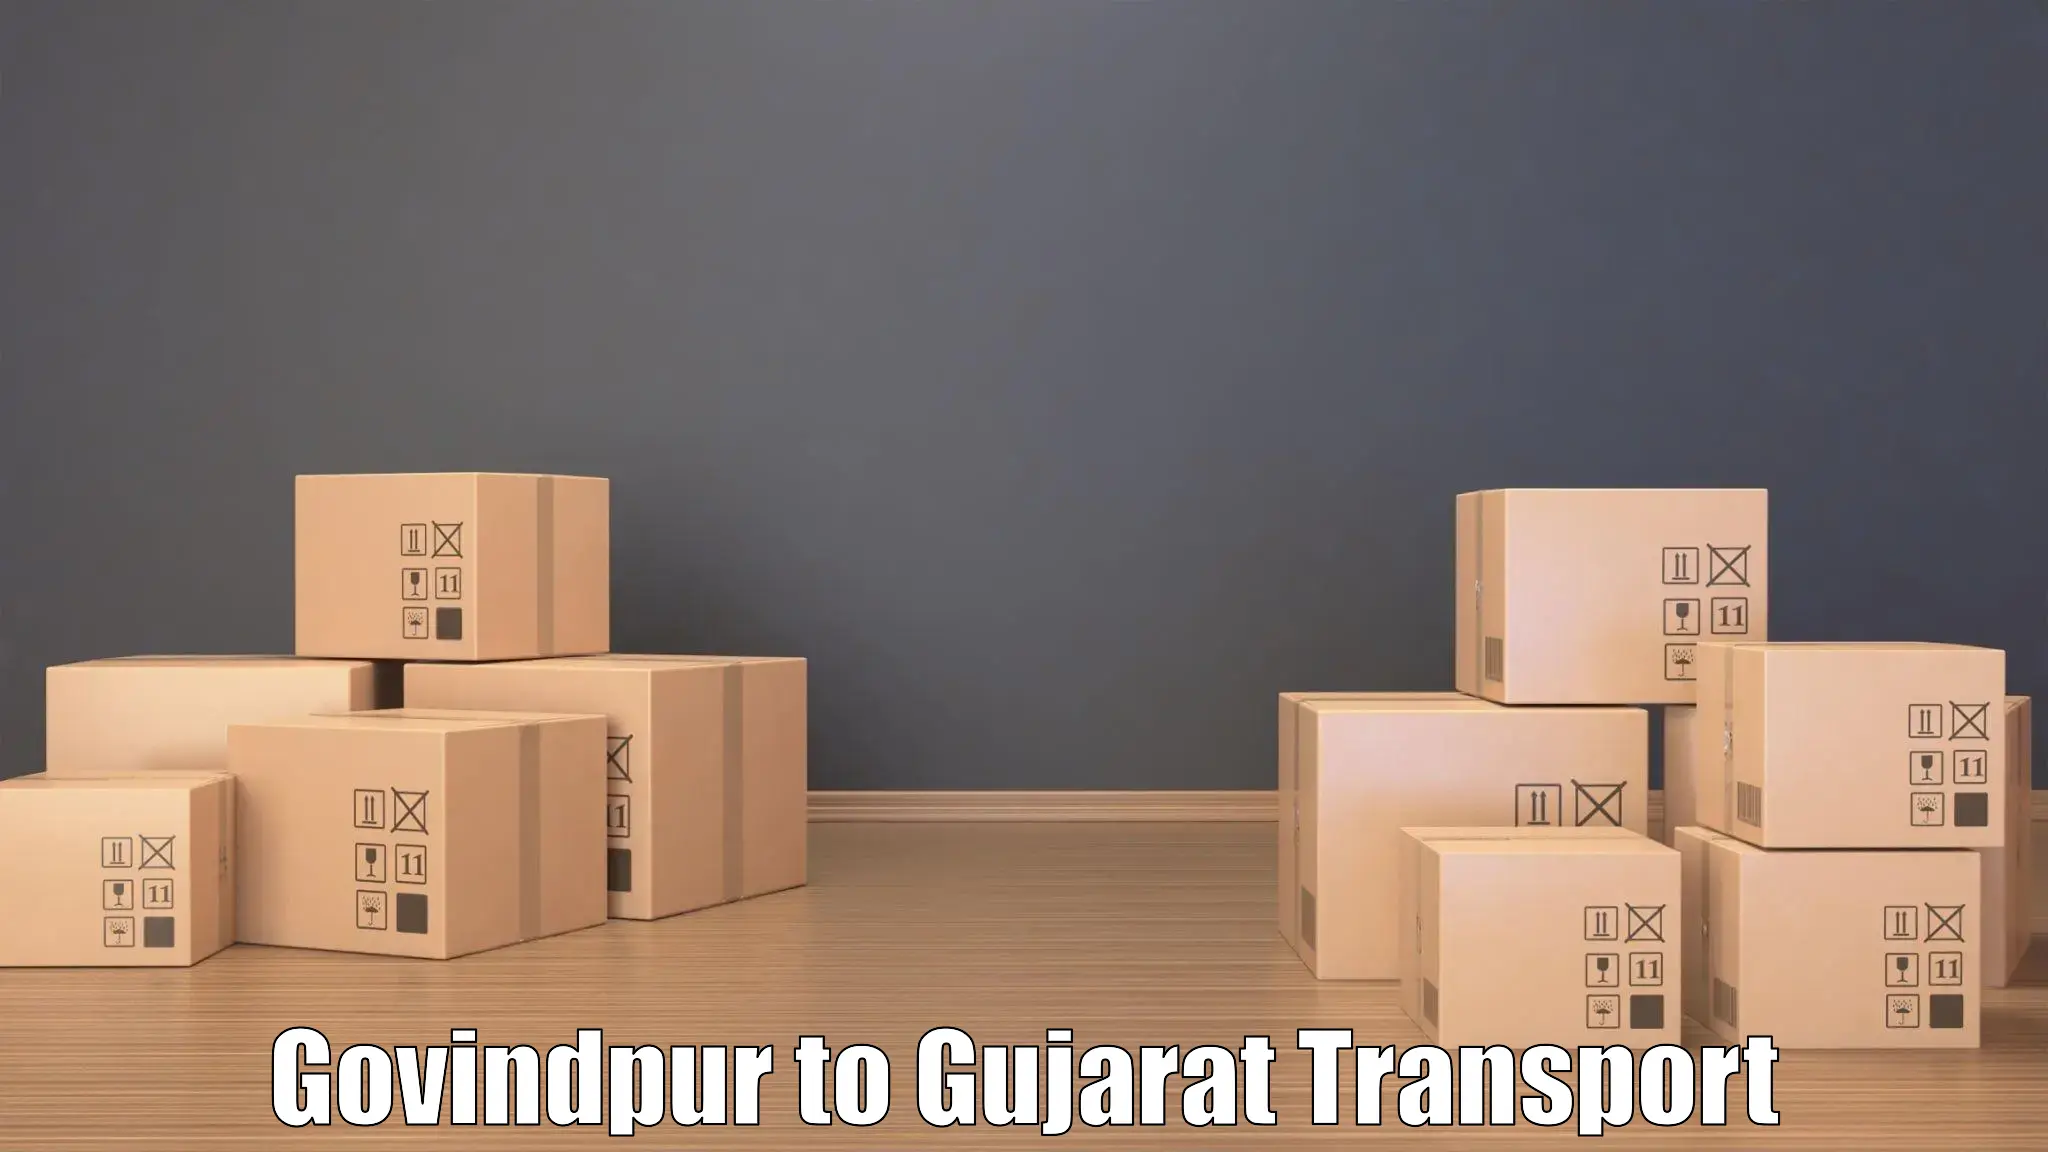 Road transport online services Govindpur to Bardoli